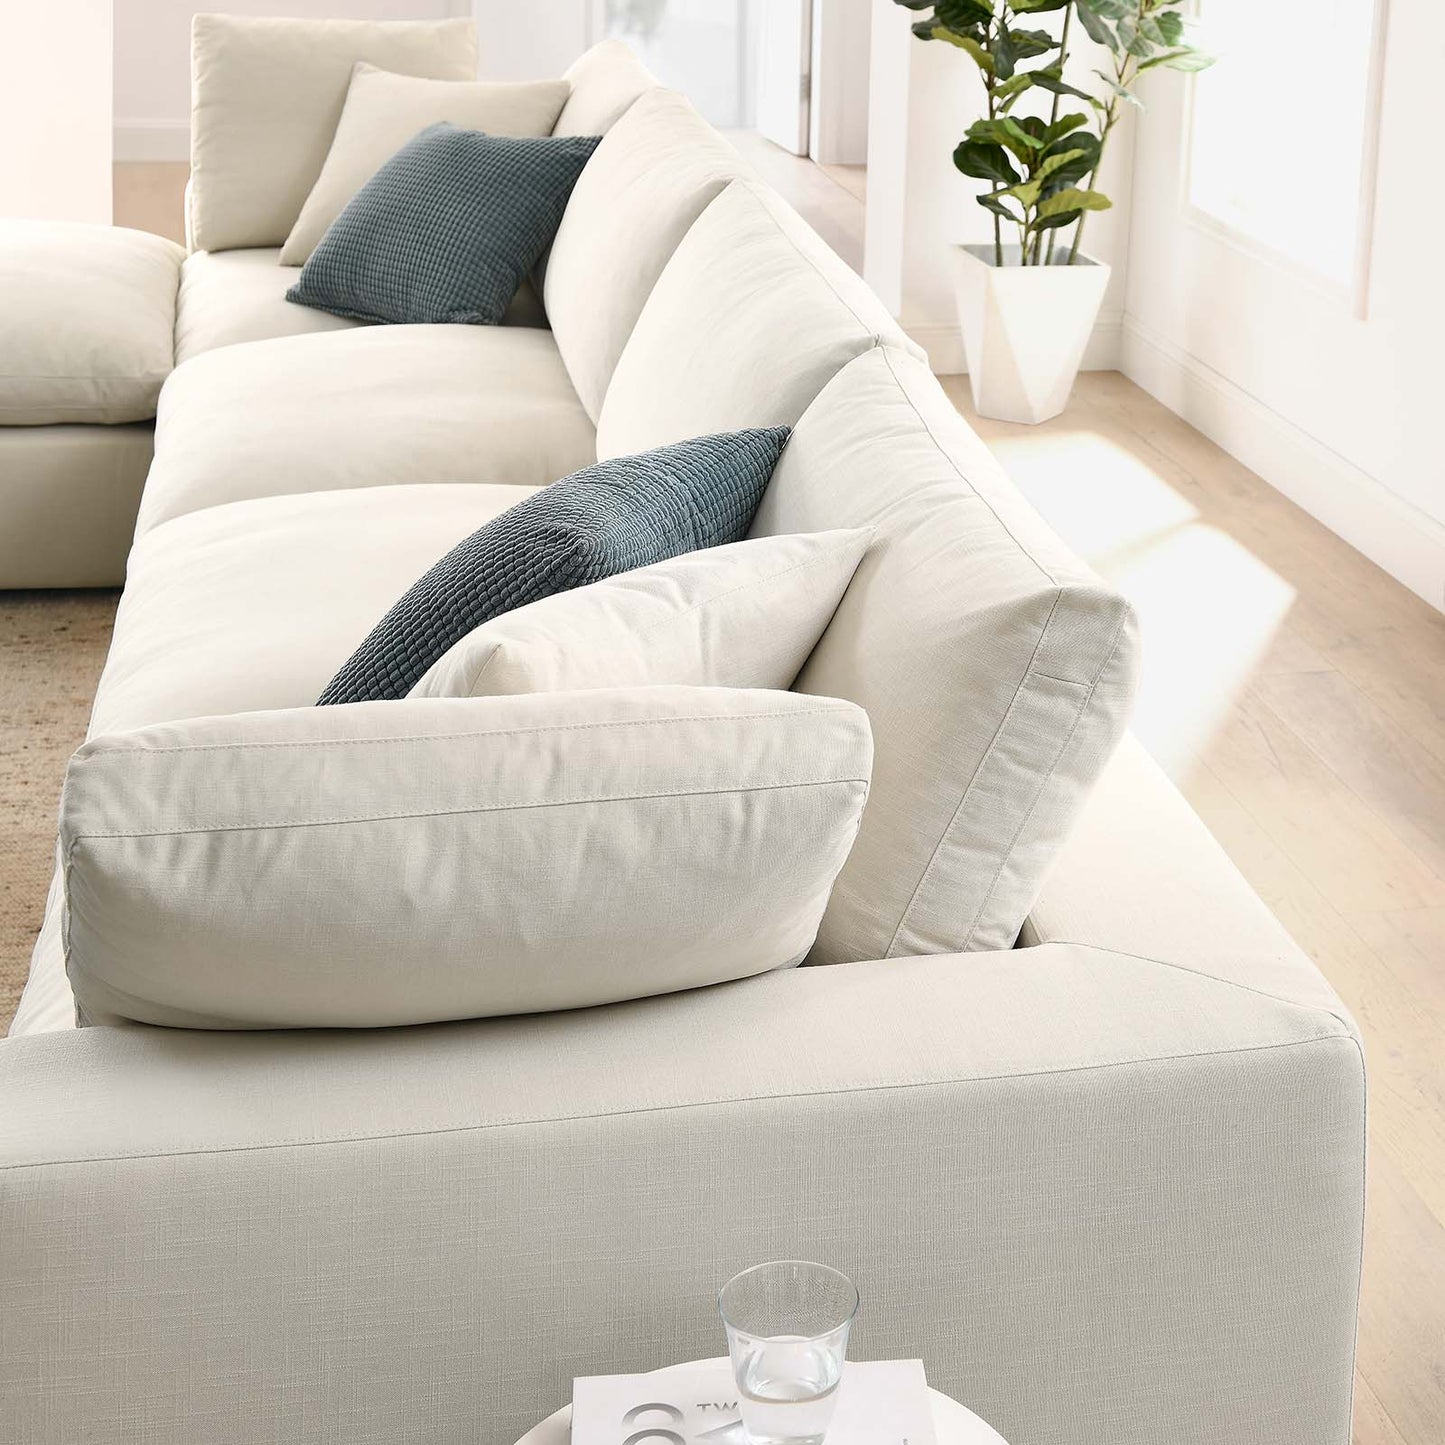 Commix Down Filled Overstuffed 5 Piece Sectional Sofa Set Light Beige EEI-3358-LBG